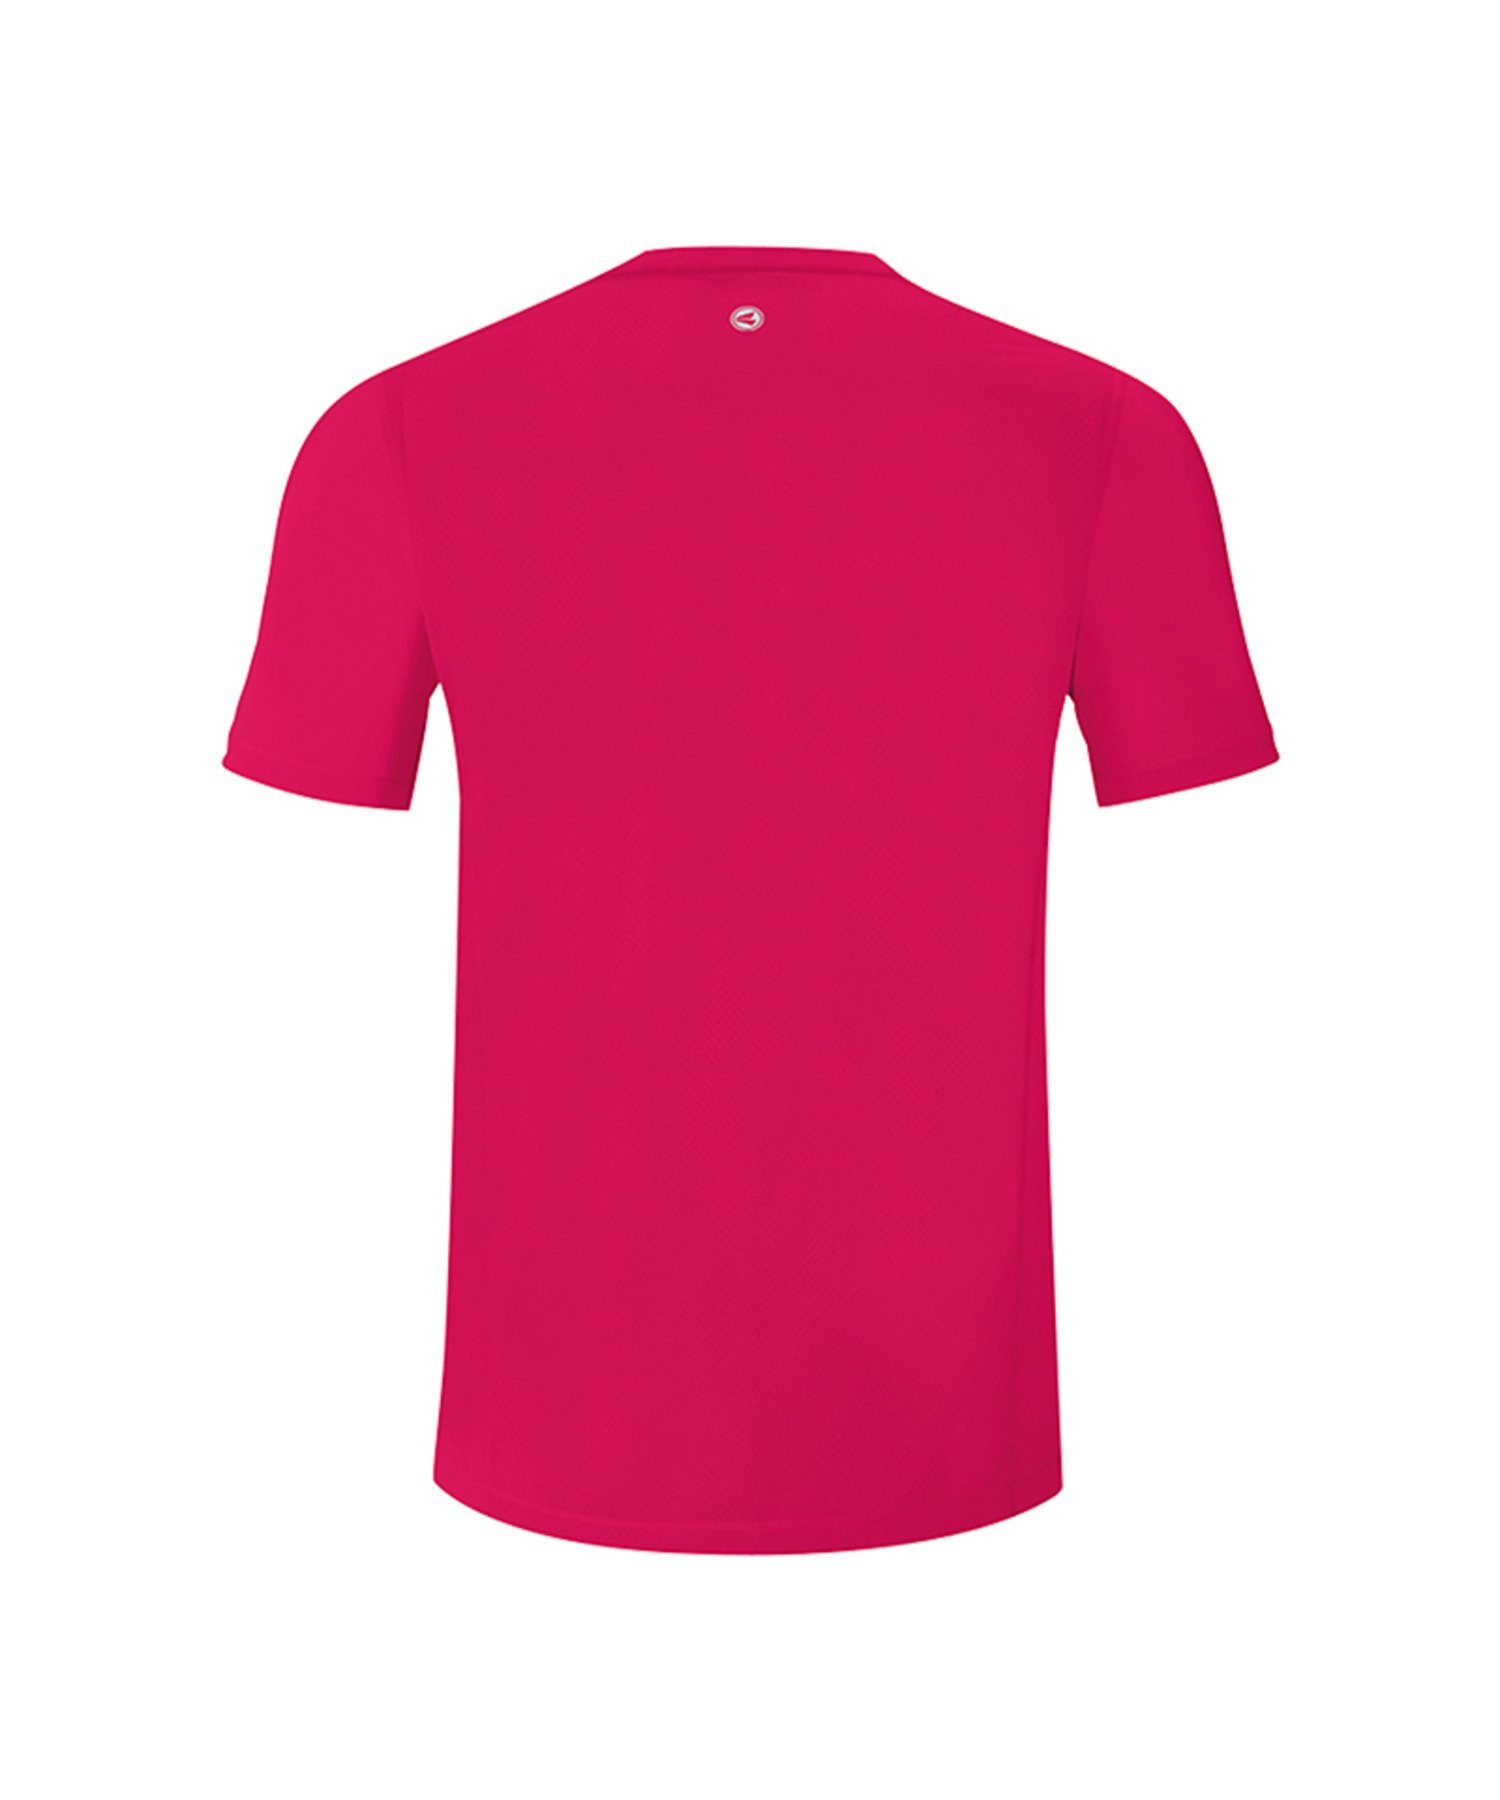 Jako T-Shirt Run T-Shirt Pink 2.0 default Running